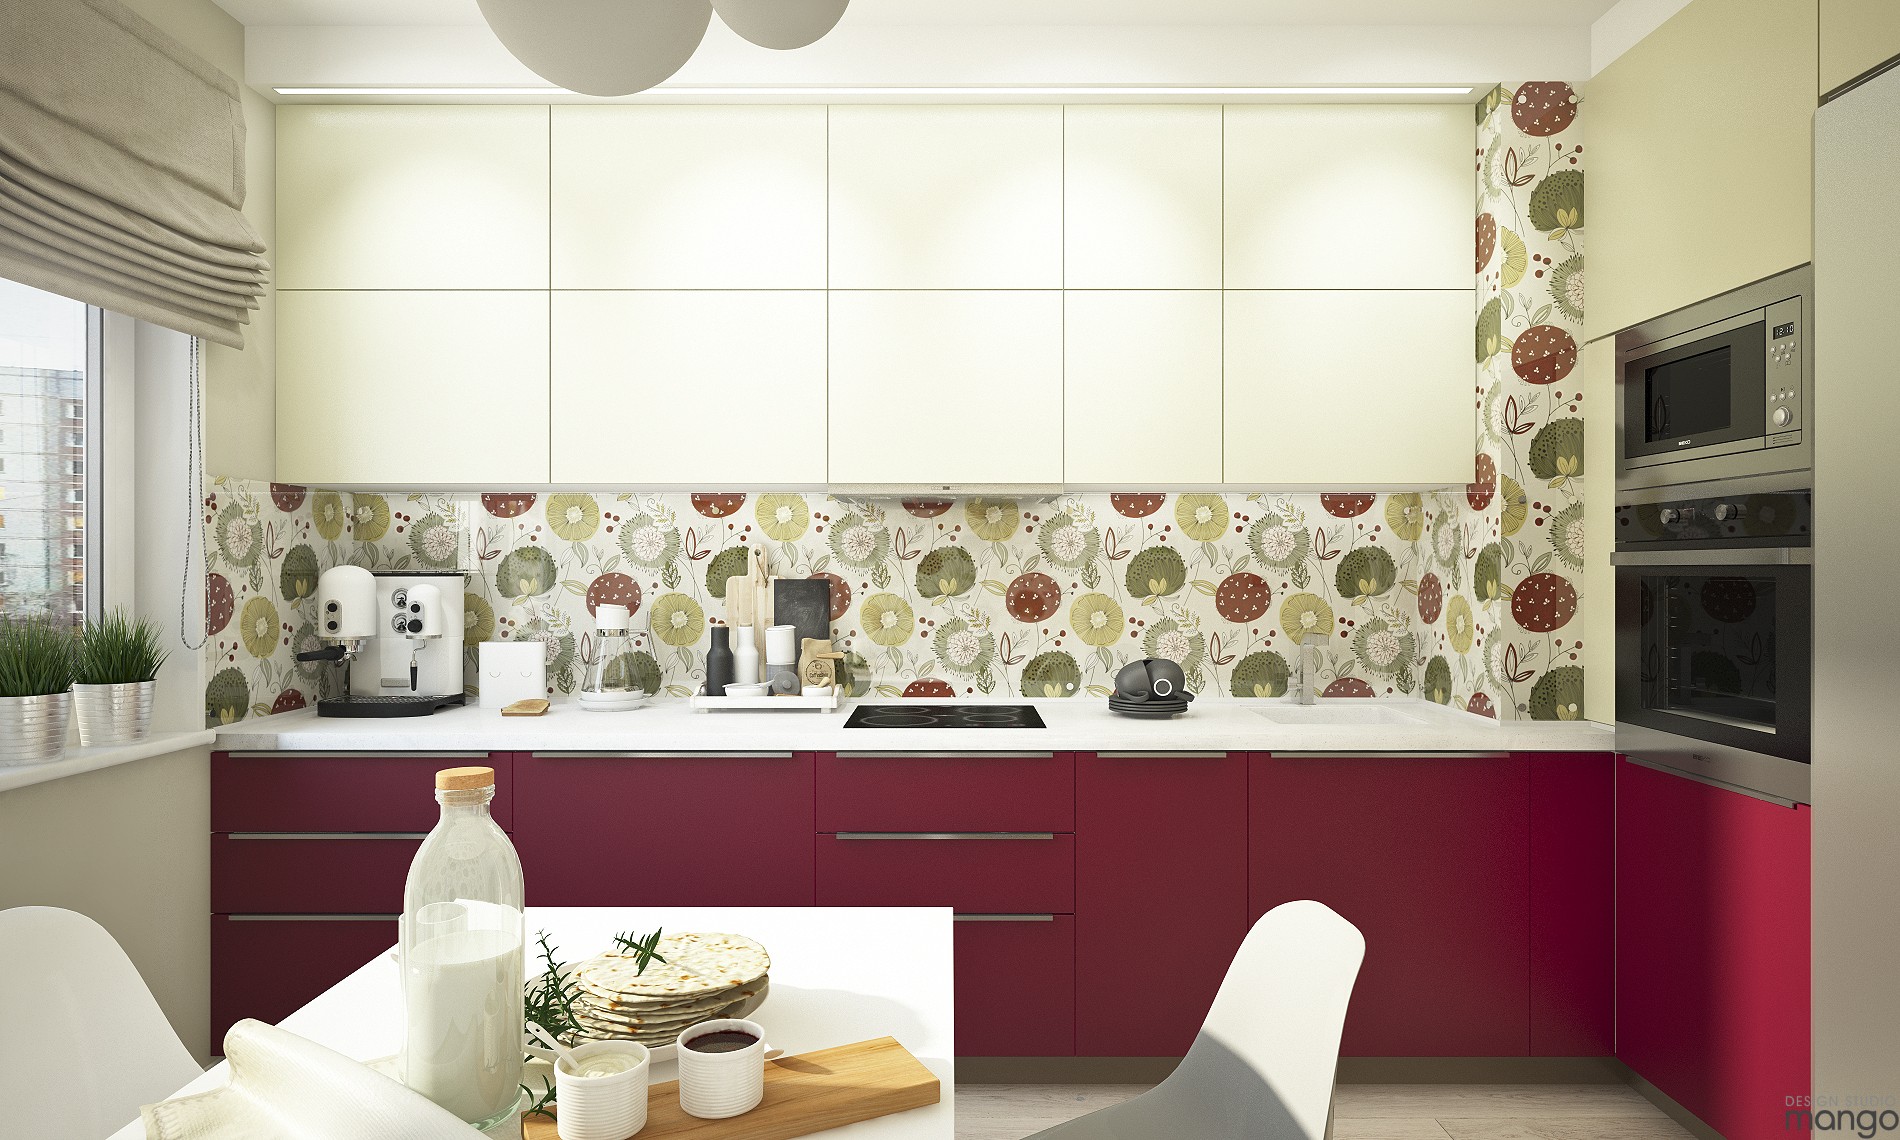 floral kitchen backsplash design